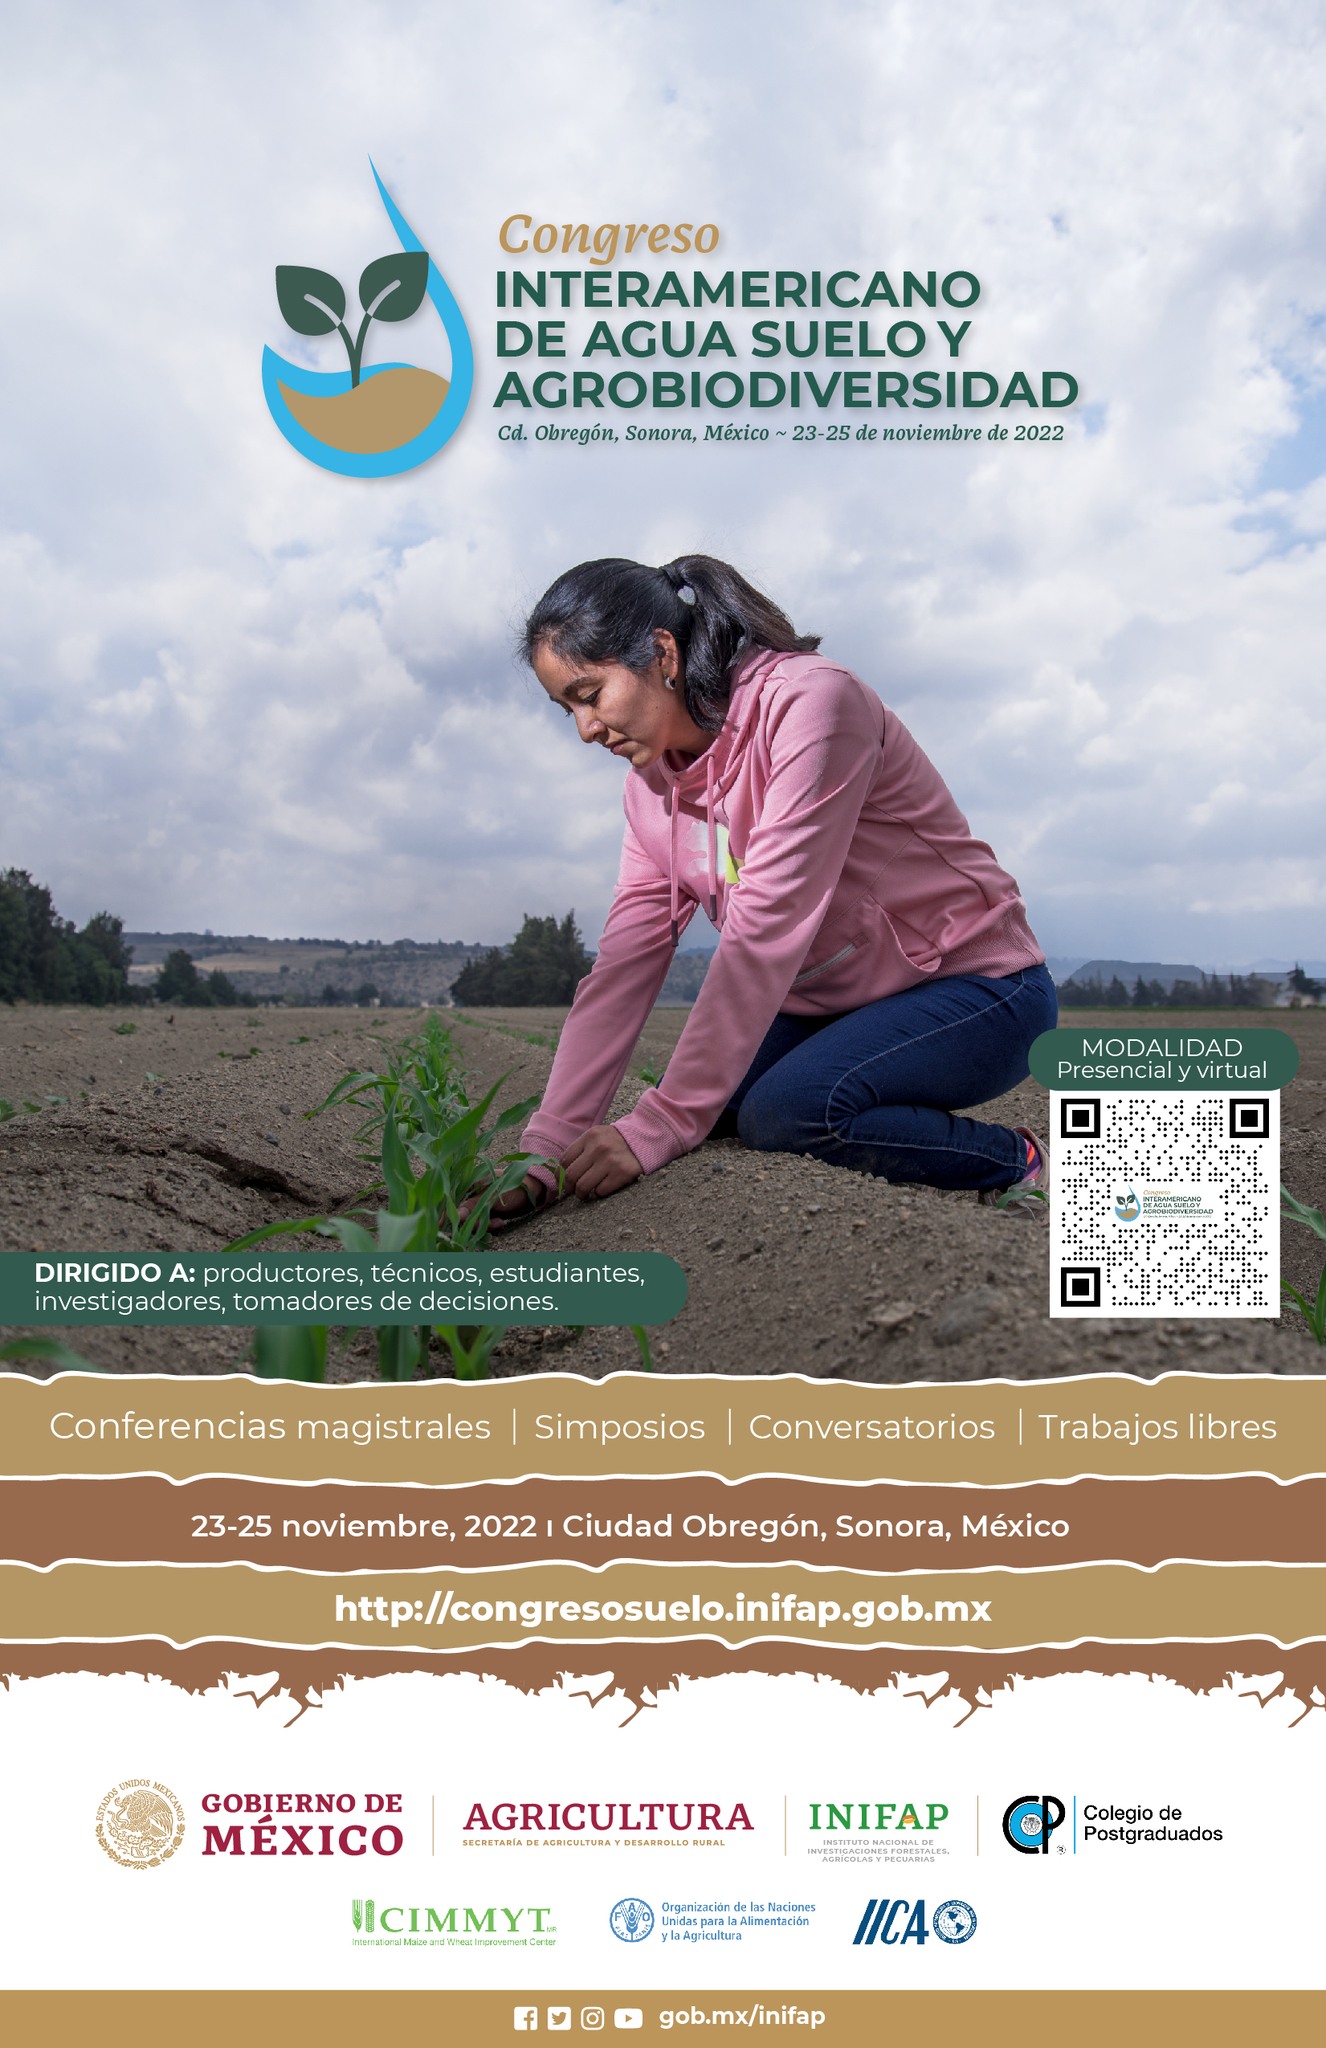 Congreso Interamericano de Agua, Suelo y Agrobiodiversidad (INIFAP)